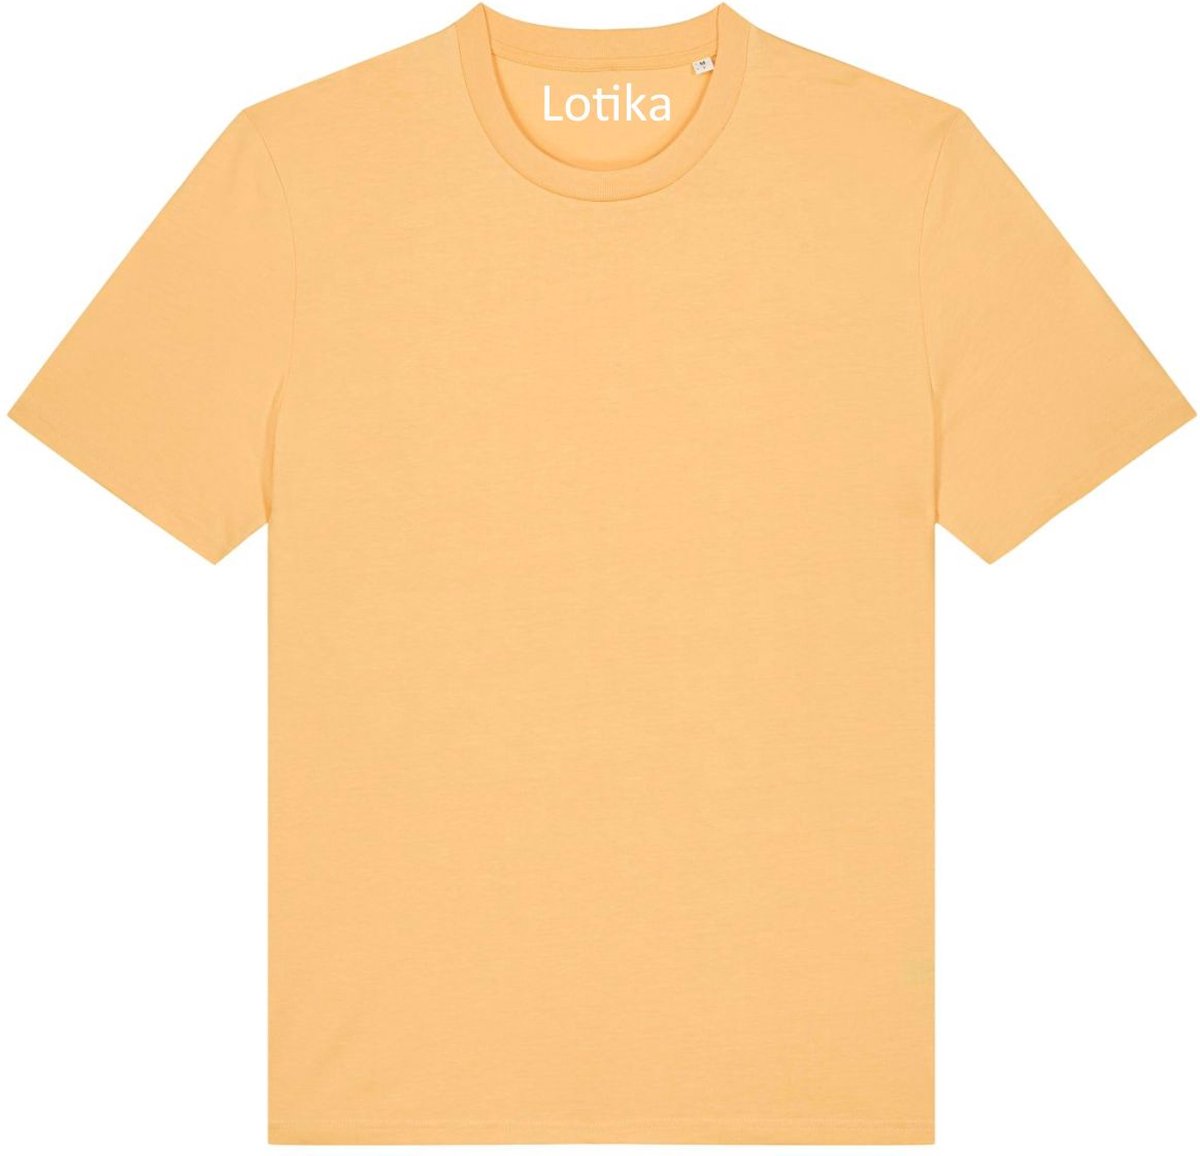 Lotika - Juul T-shirt biologisch katoen - nispero